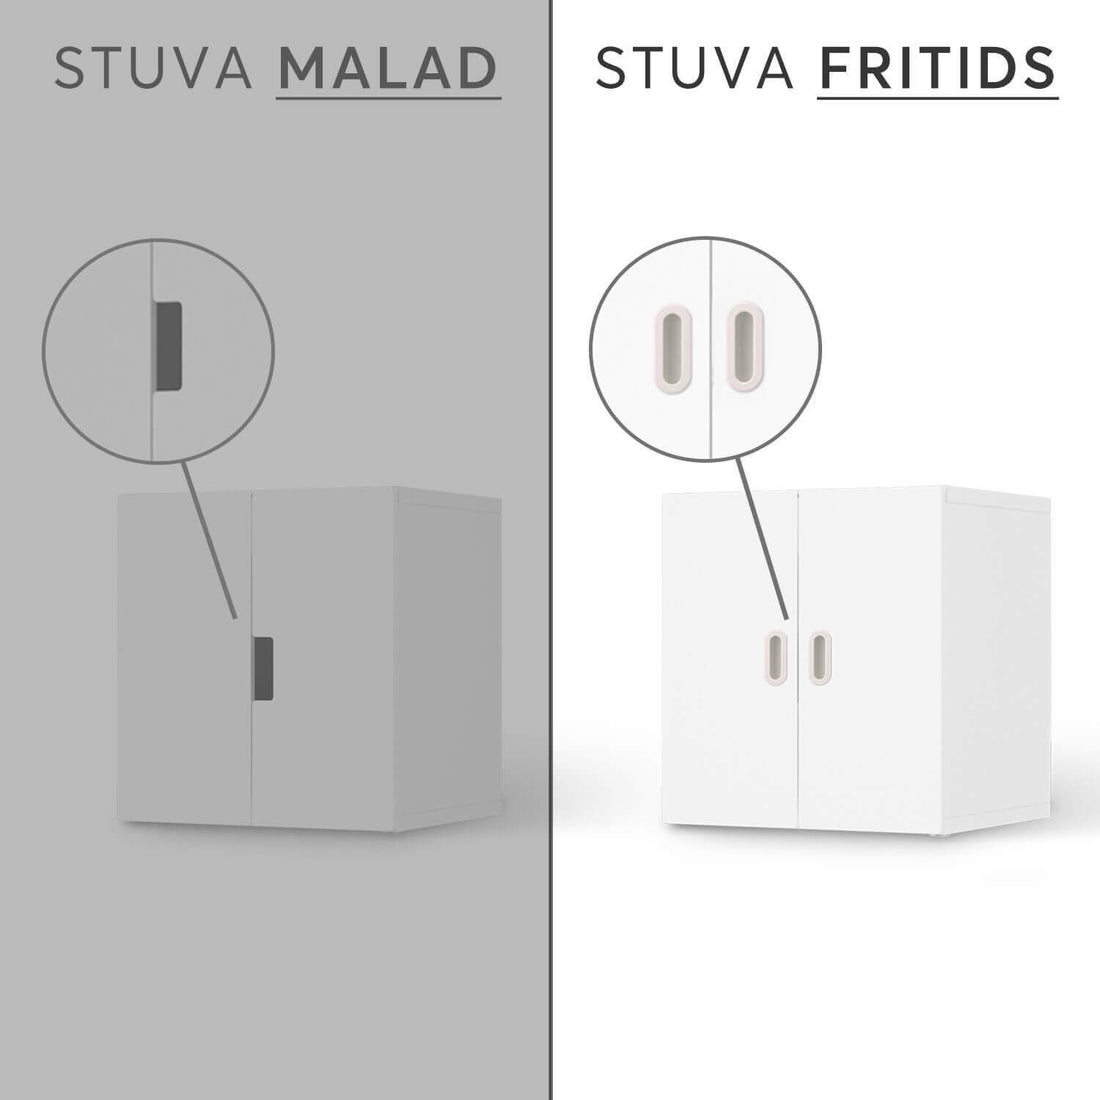 Vergleich IKEA Stuva Fritids / Malad - Machu Picchu